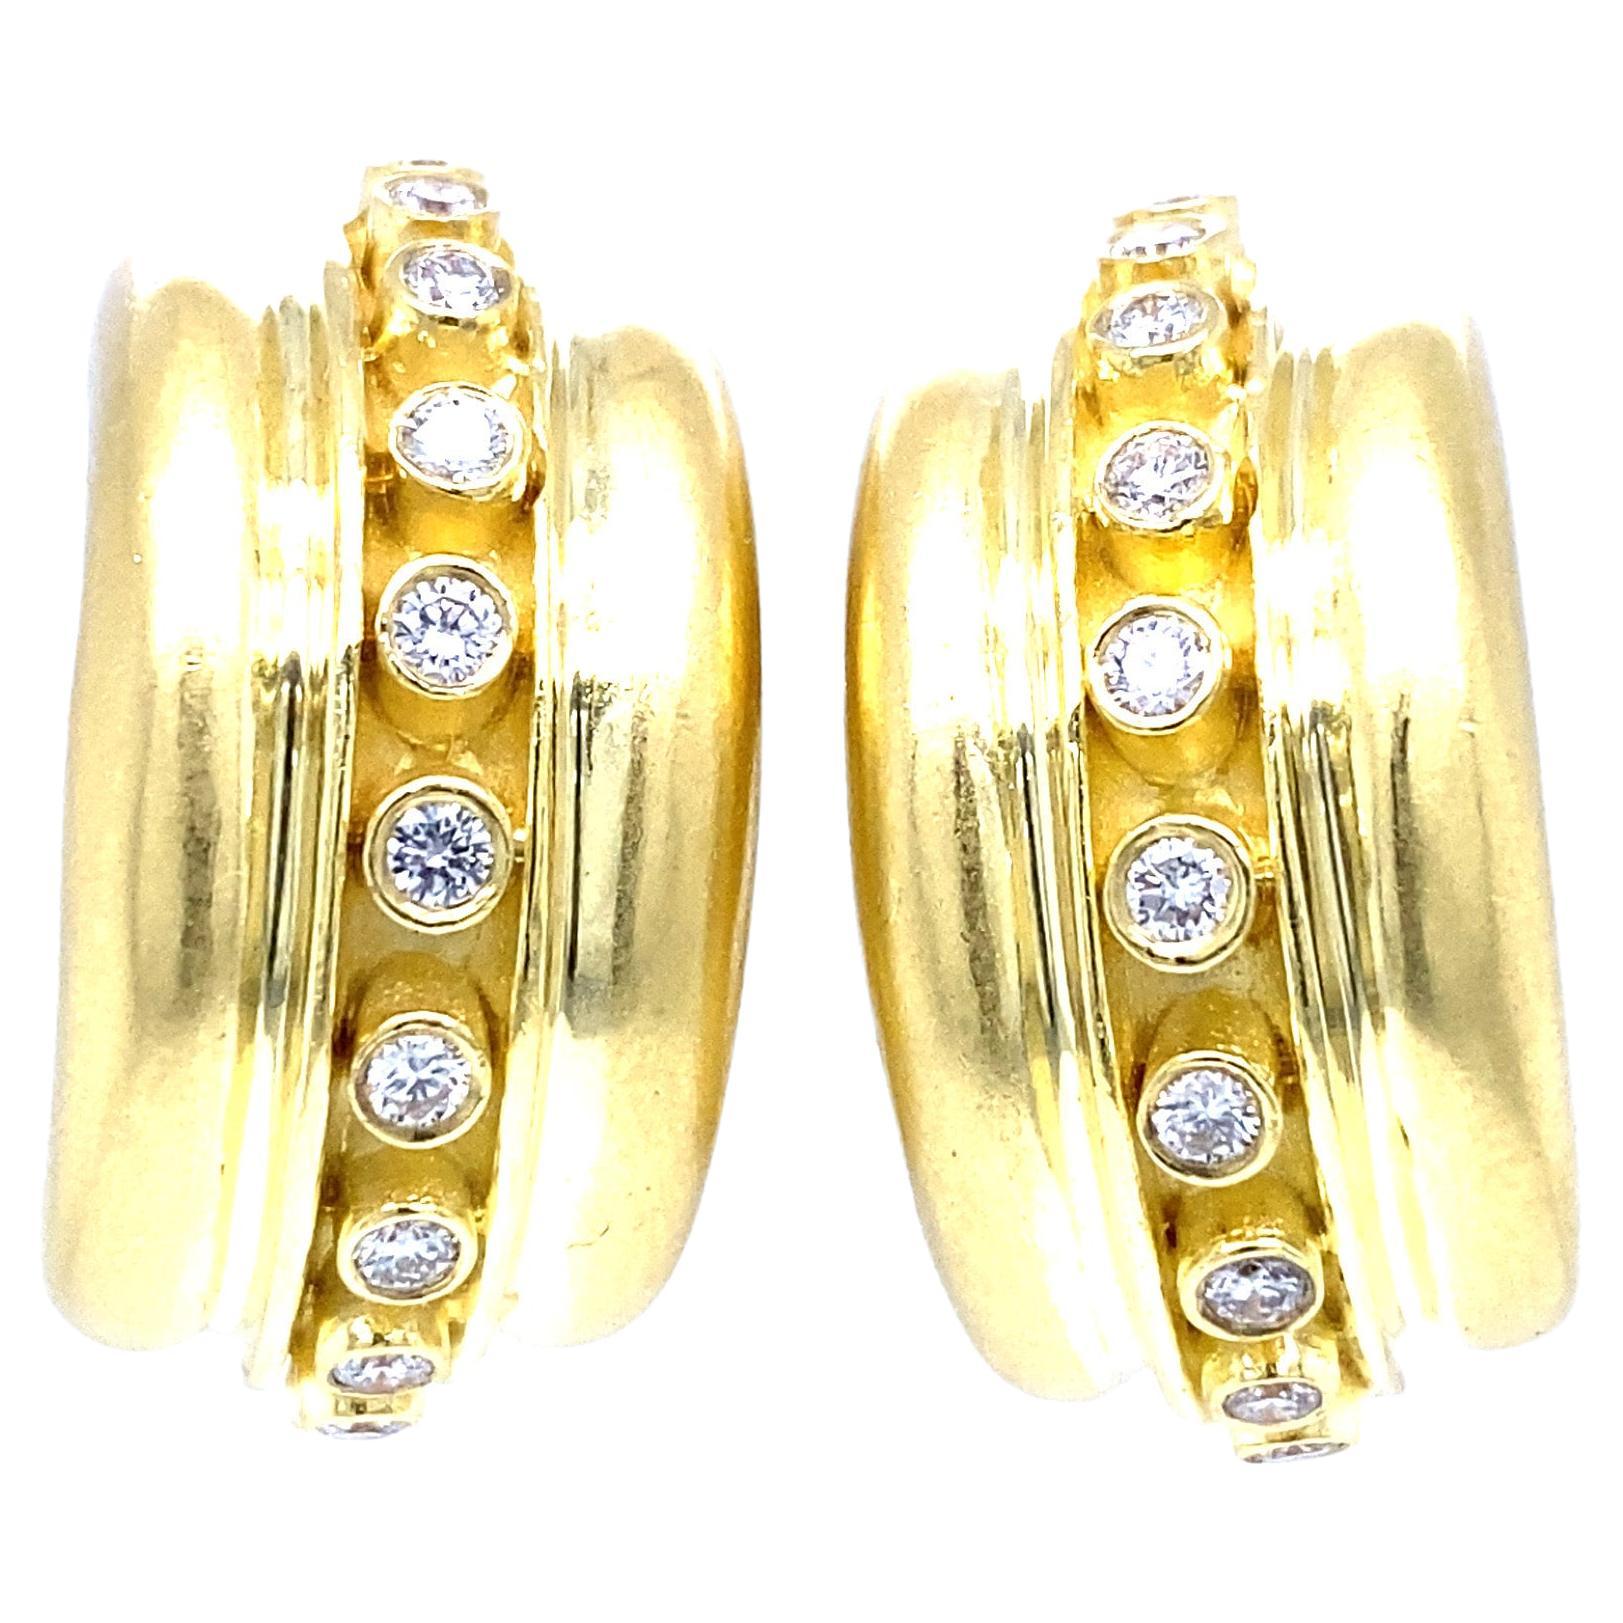 Marlene Stowe Bezel Diamond Hoop Earrings in 18k Yellow Gold